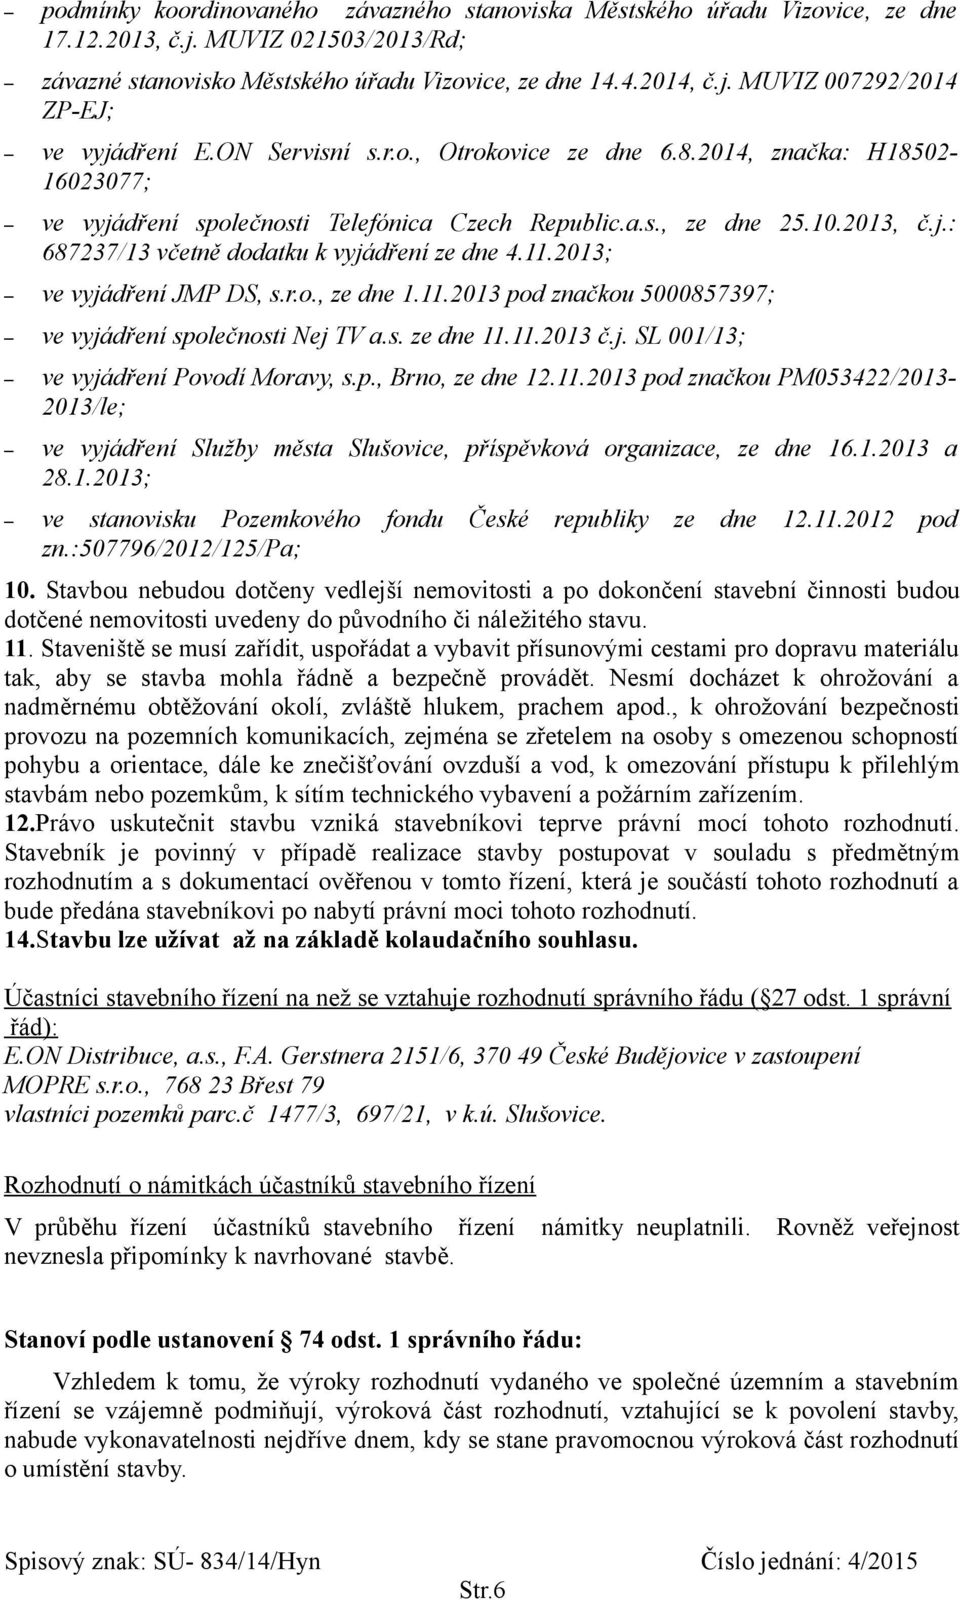 11.2013; ve vyjádření JMP DS, s.r.o., ze dne 1.11.2013 pod značkou 5000857397; ve vyjádření společnosti Nej TV a.s. ze dne 11.11.2013 č.j. SL 001/13; ve vyjádření Povodí Moravy, s.p., Brno, ze dne 12.